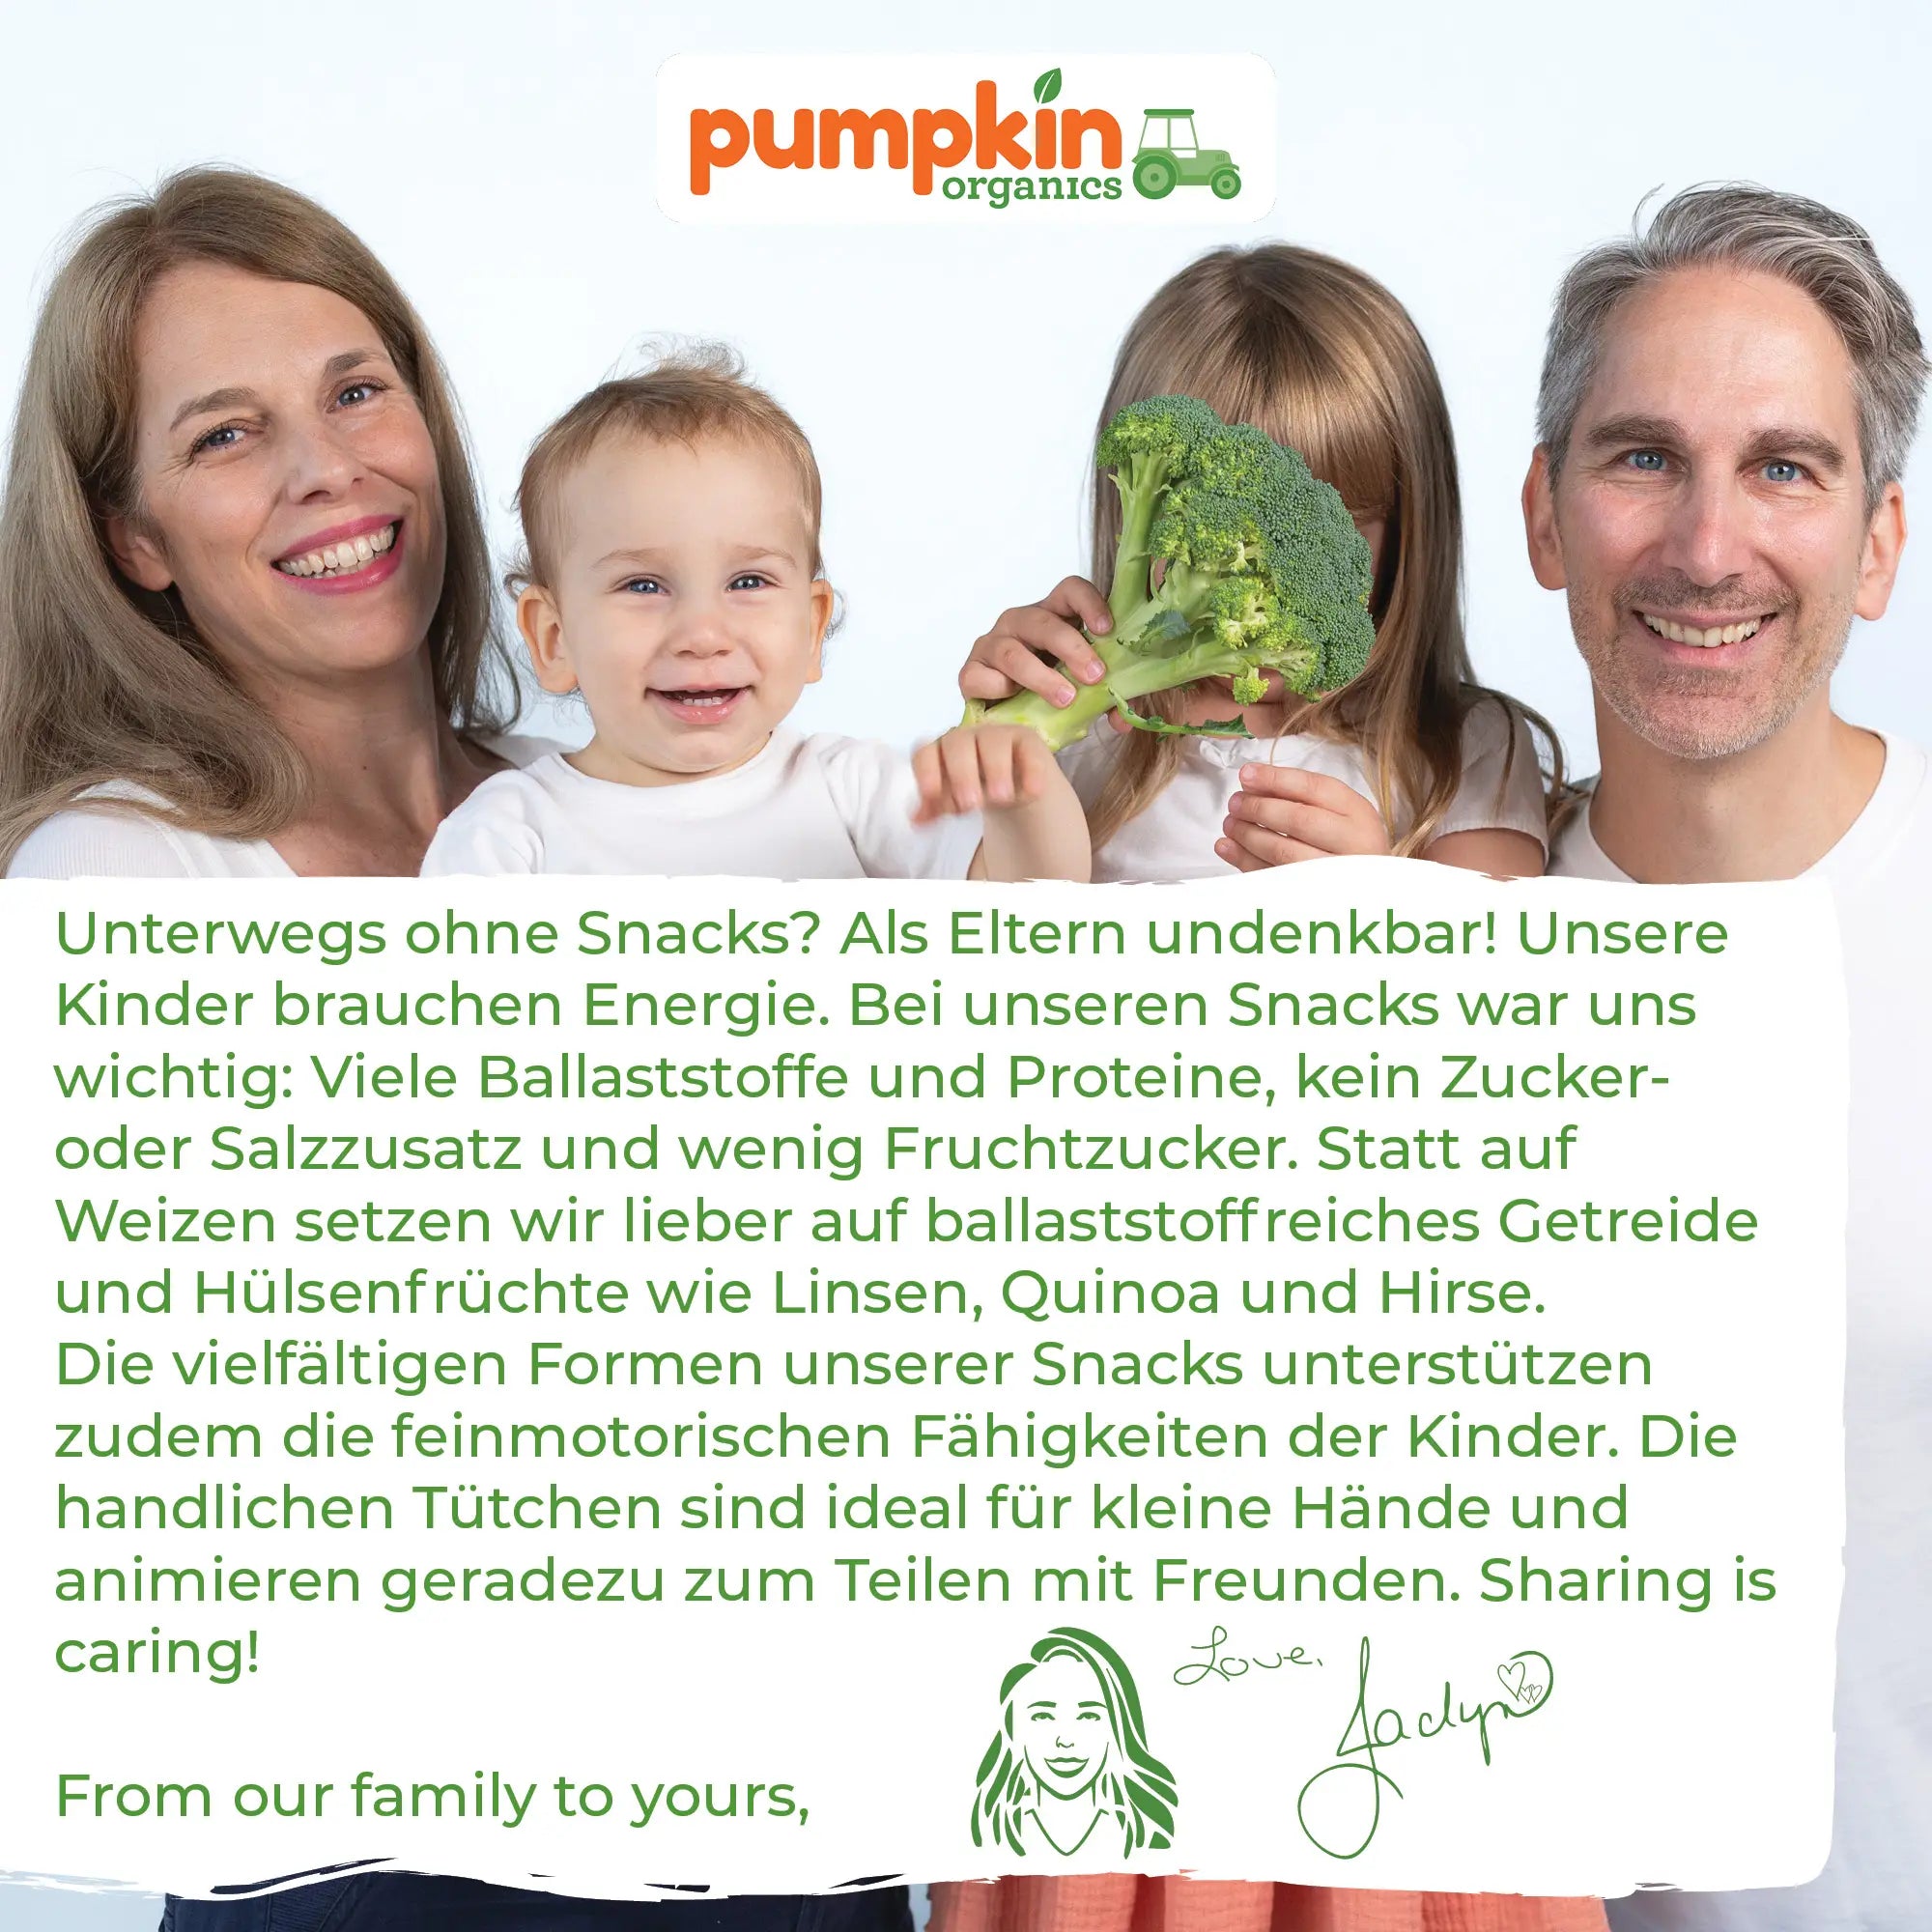 Pumpkin Organics Familie liebt gesunde Knusper Snacks für Kinder